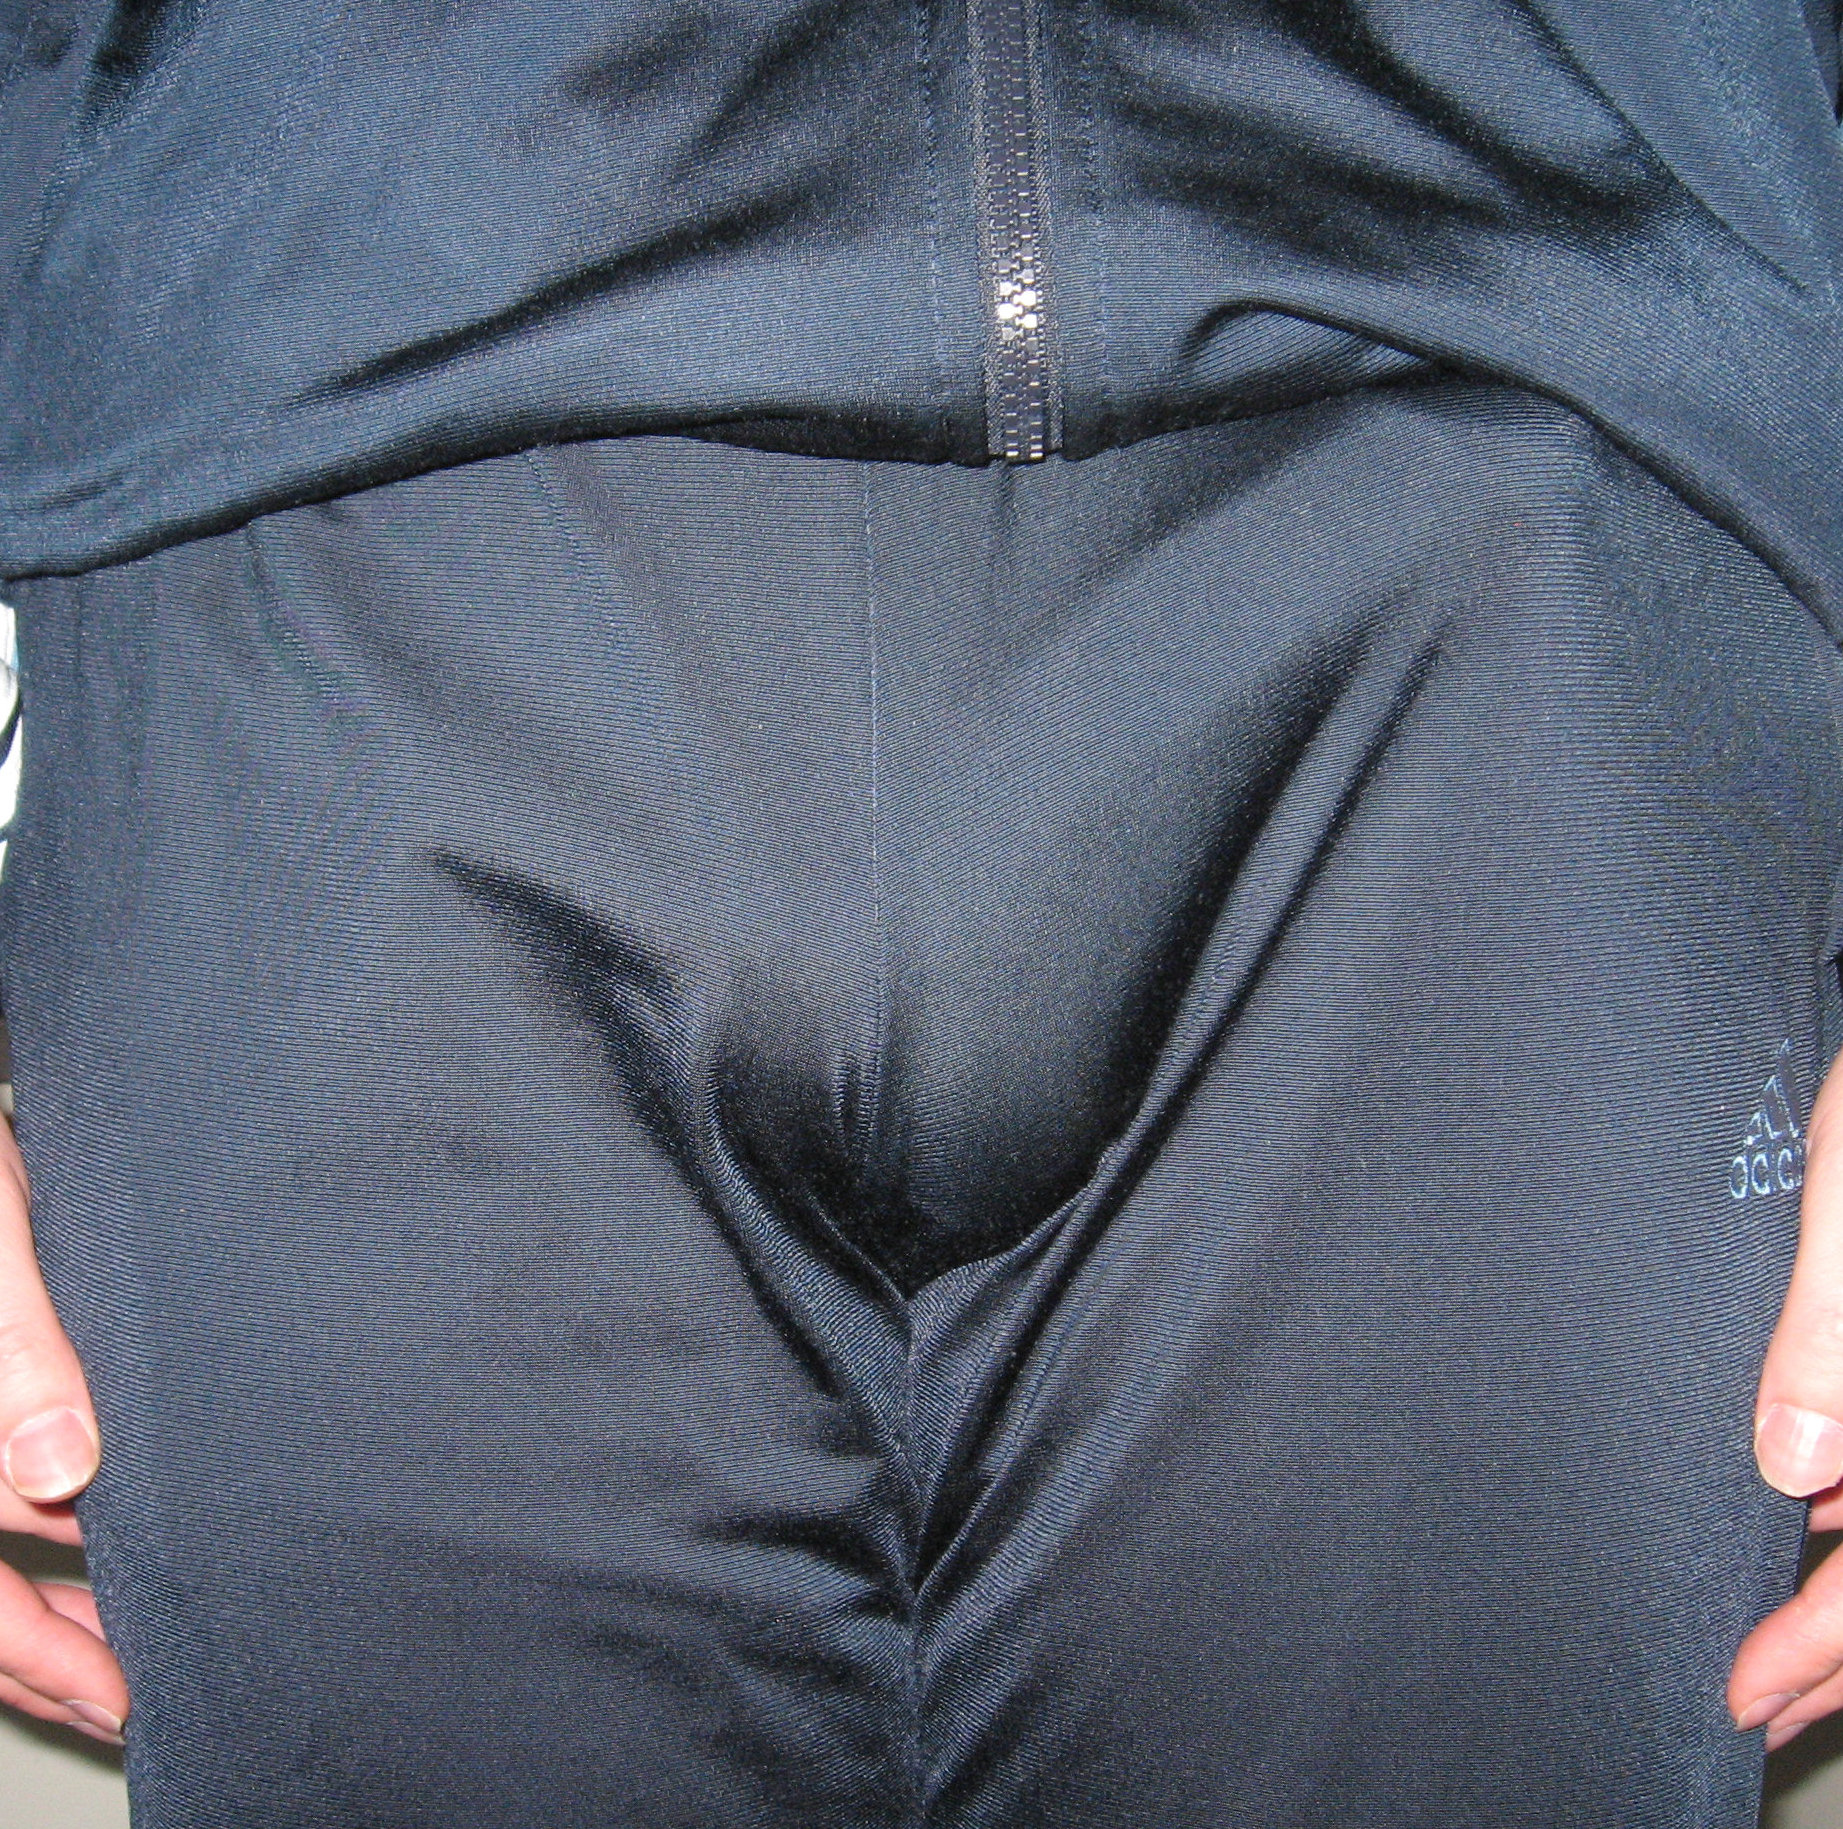 daniel rodgerson reccomend penis showing through pants pic